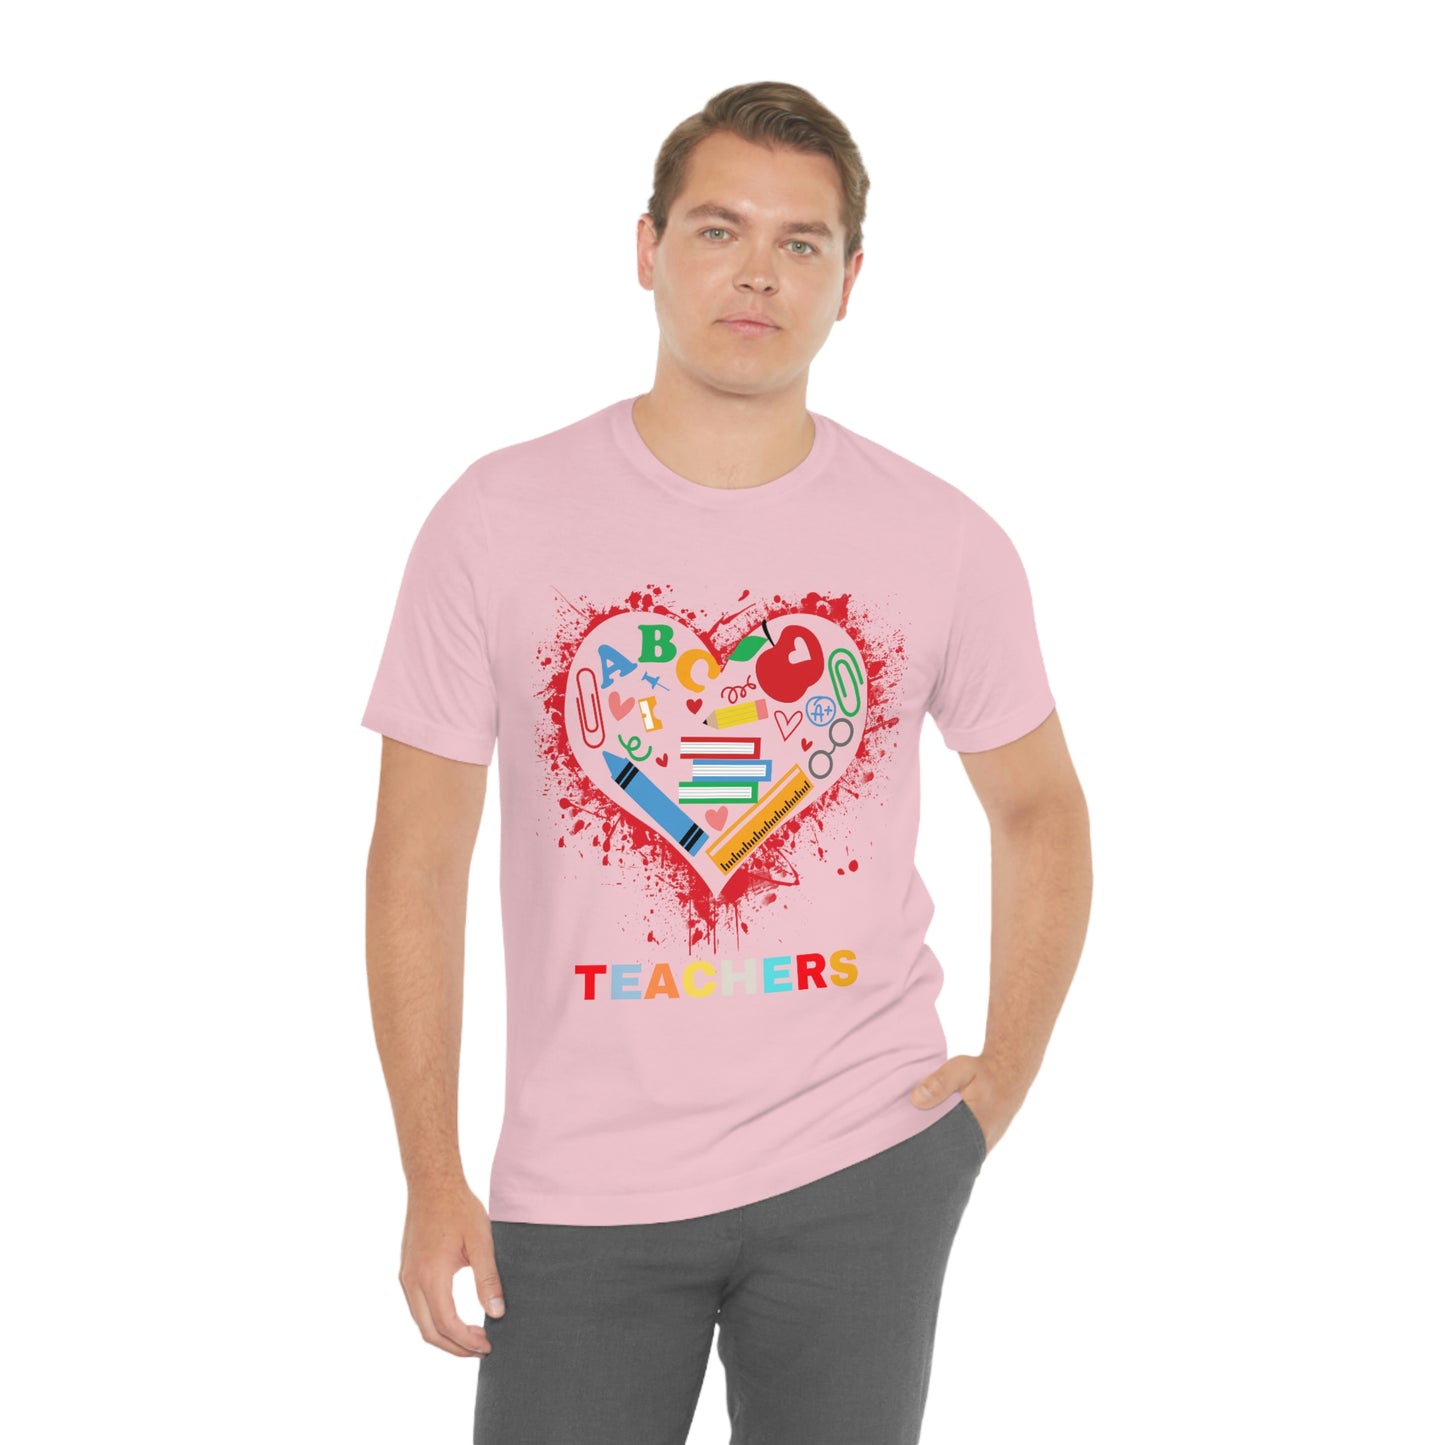 Love Teachers Shirt - Teacher Appreciation Shirt